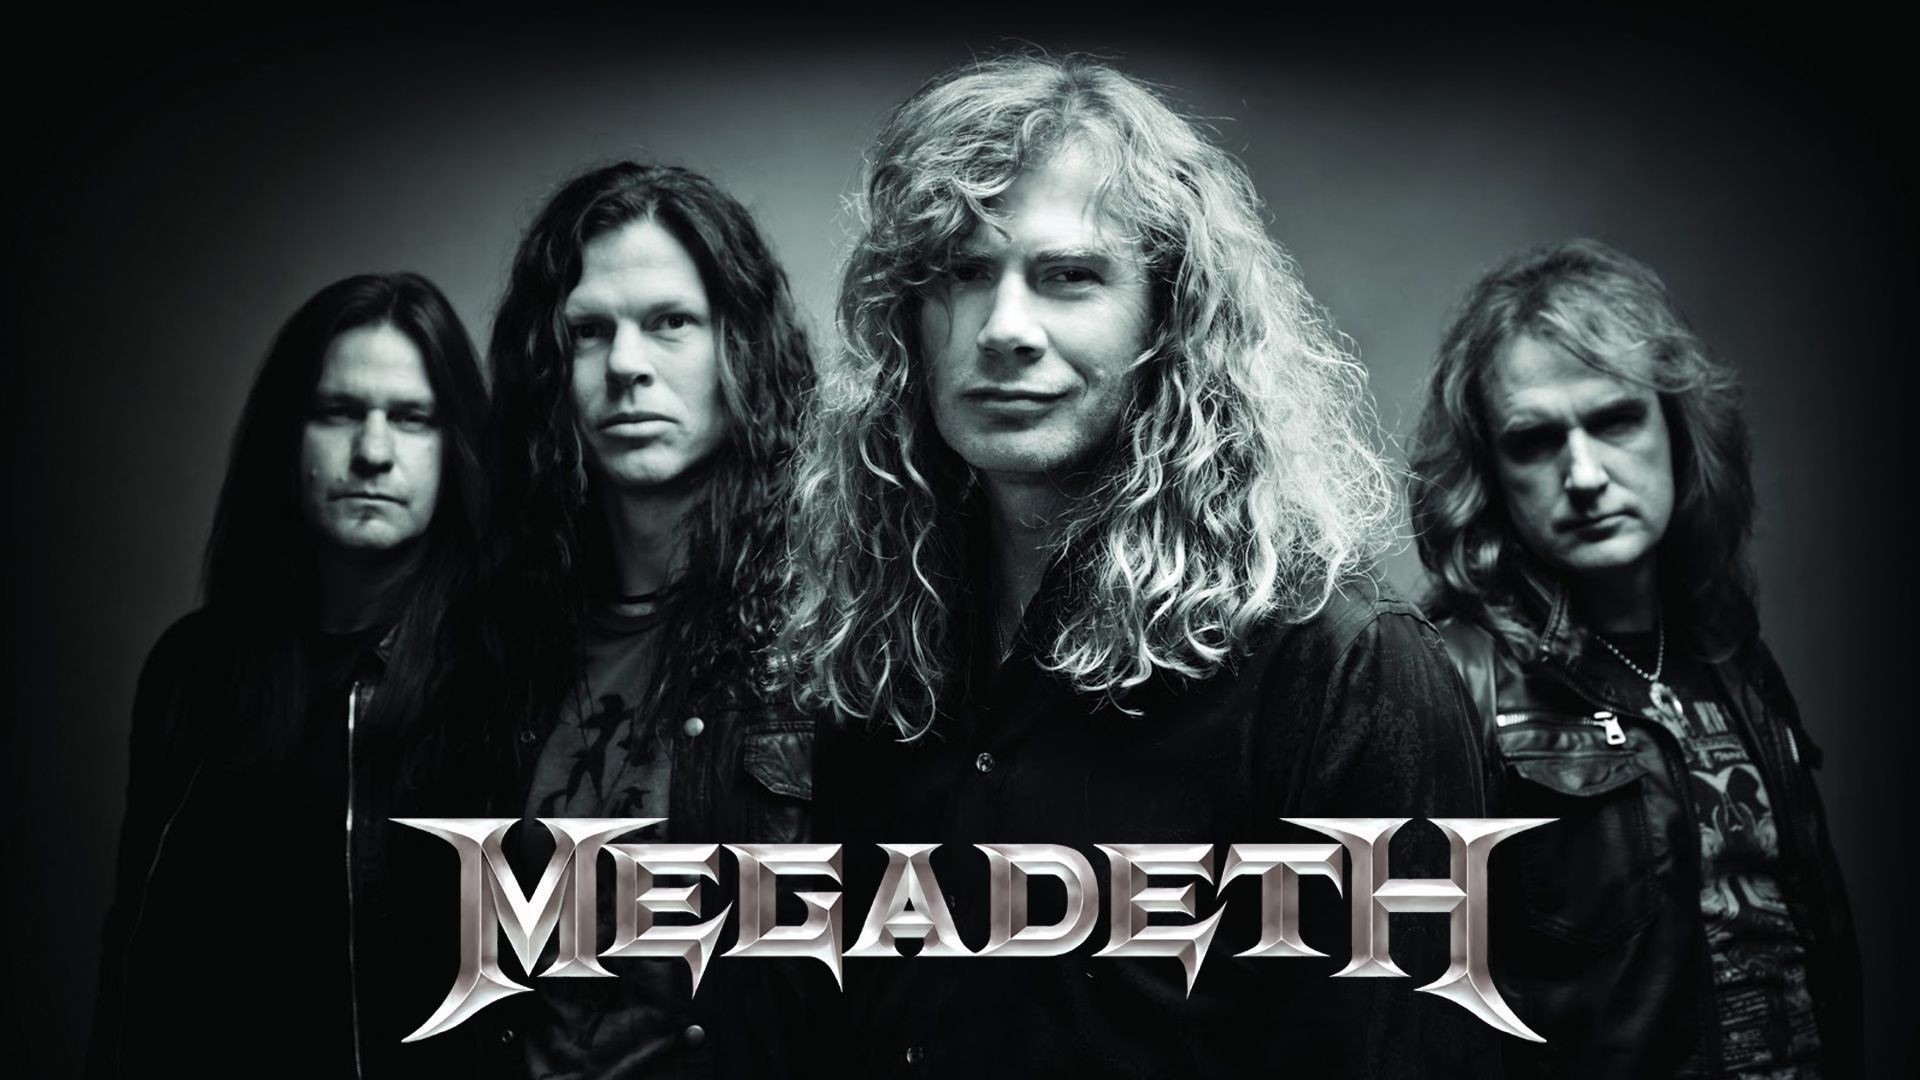 1920x1080 Megadeth 4K Megadeth Background Megadeth Computer Backgrounds Megadeth  Computer Wallpaper ...